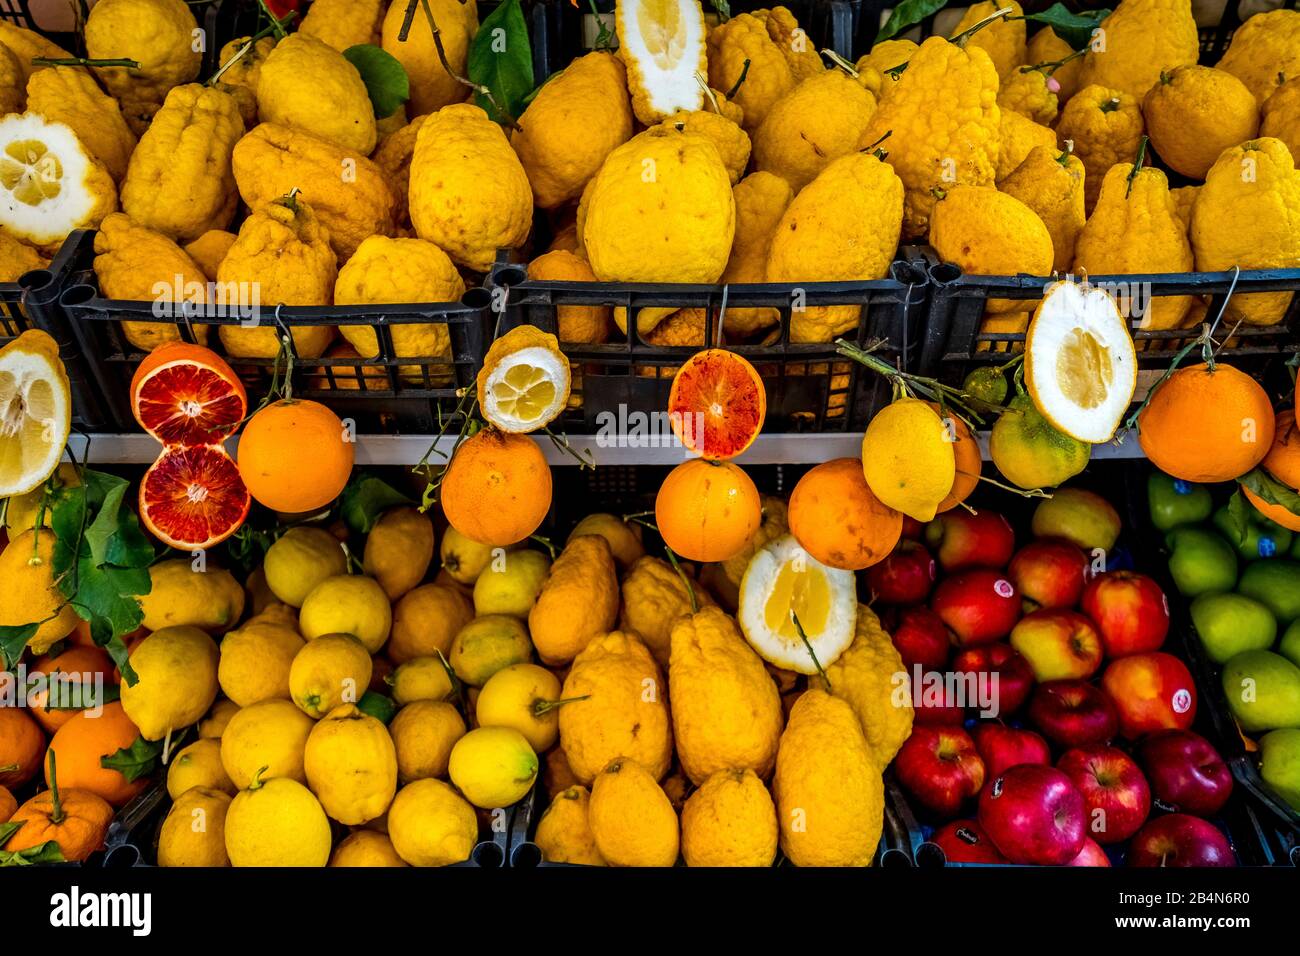 Stand de légumes et paniers de vente, oranges, citrons et fruits, Taormine, Italie du Sud, Europe, Sicile, Italie Banque D'Images